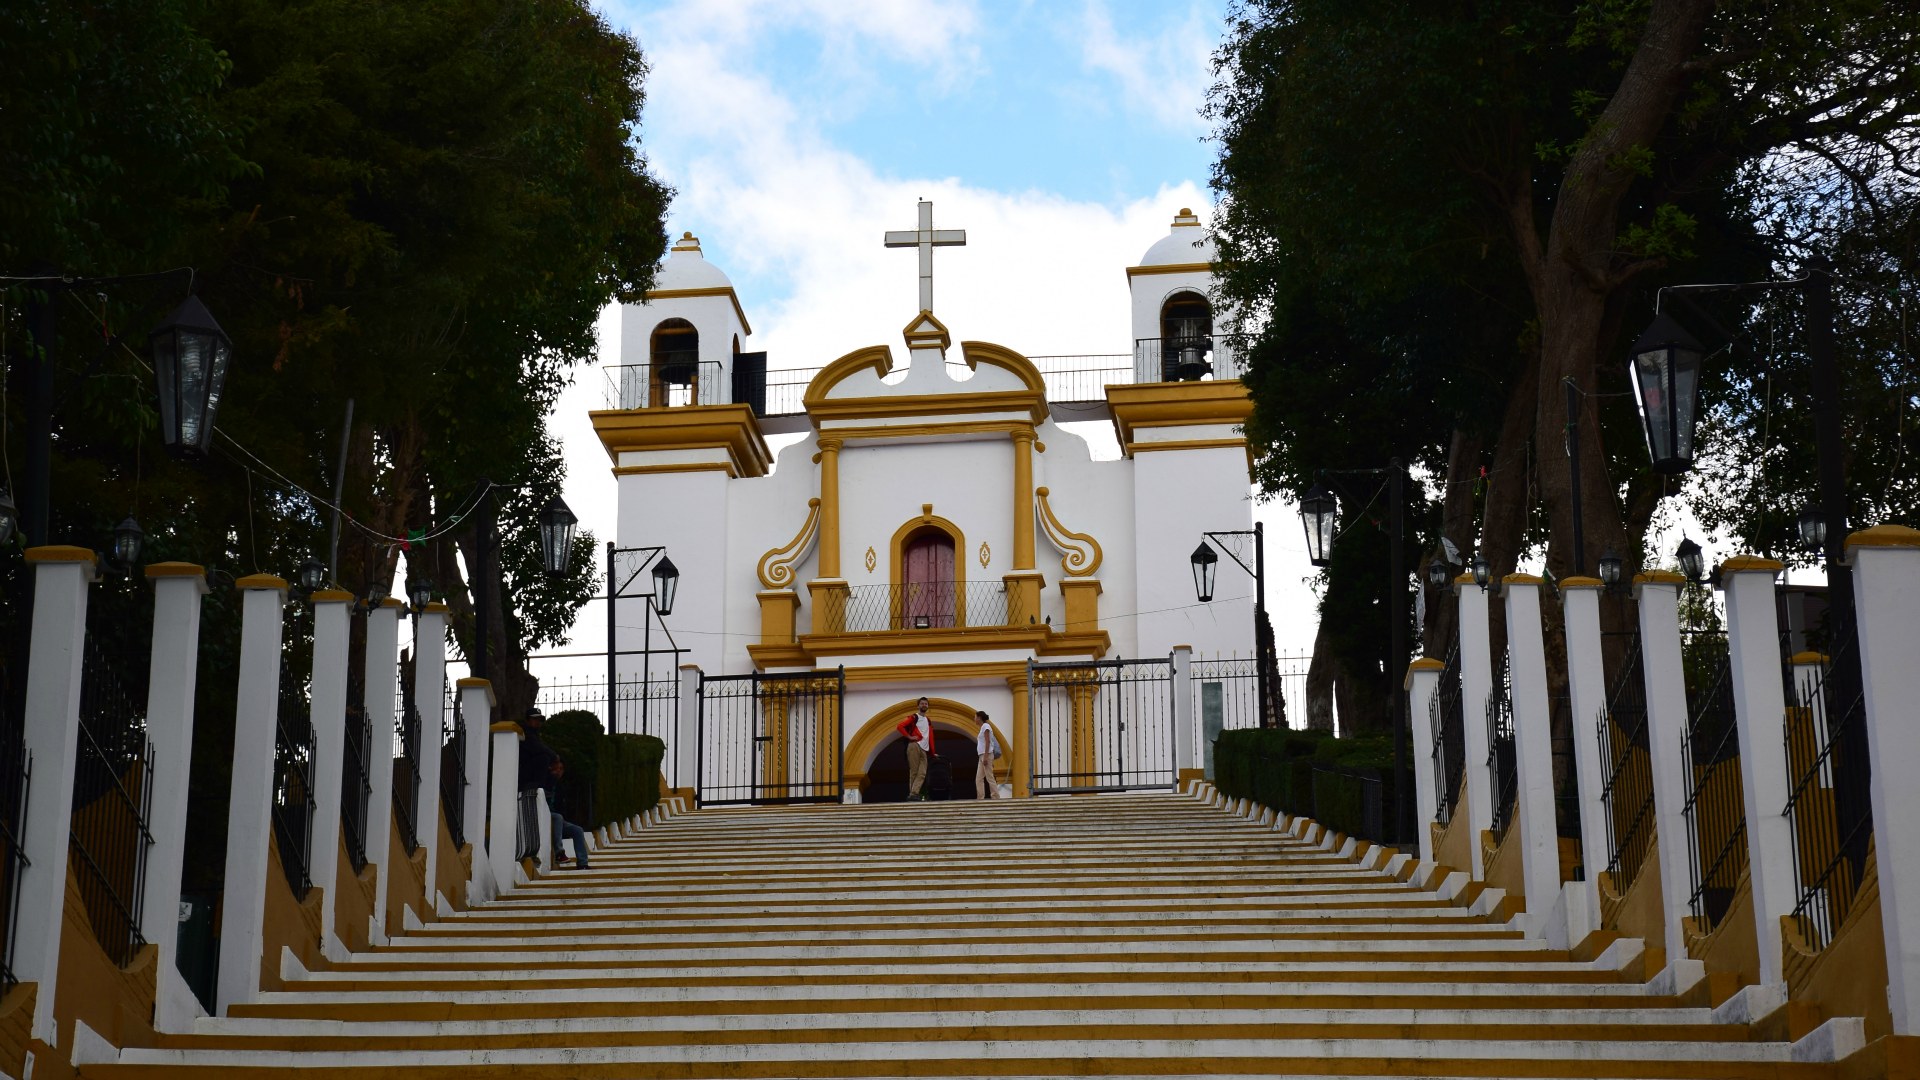 Guadelupe Church, San Cristobal de las Casas, Mexico